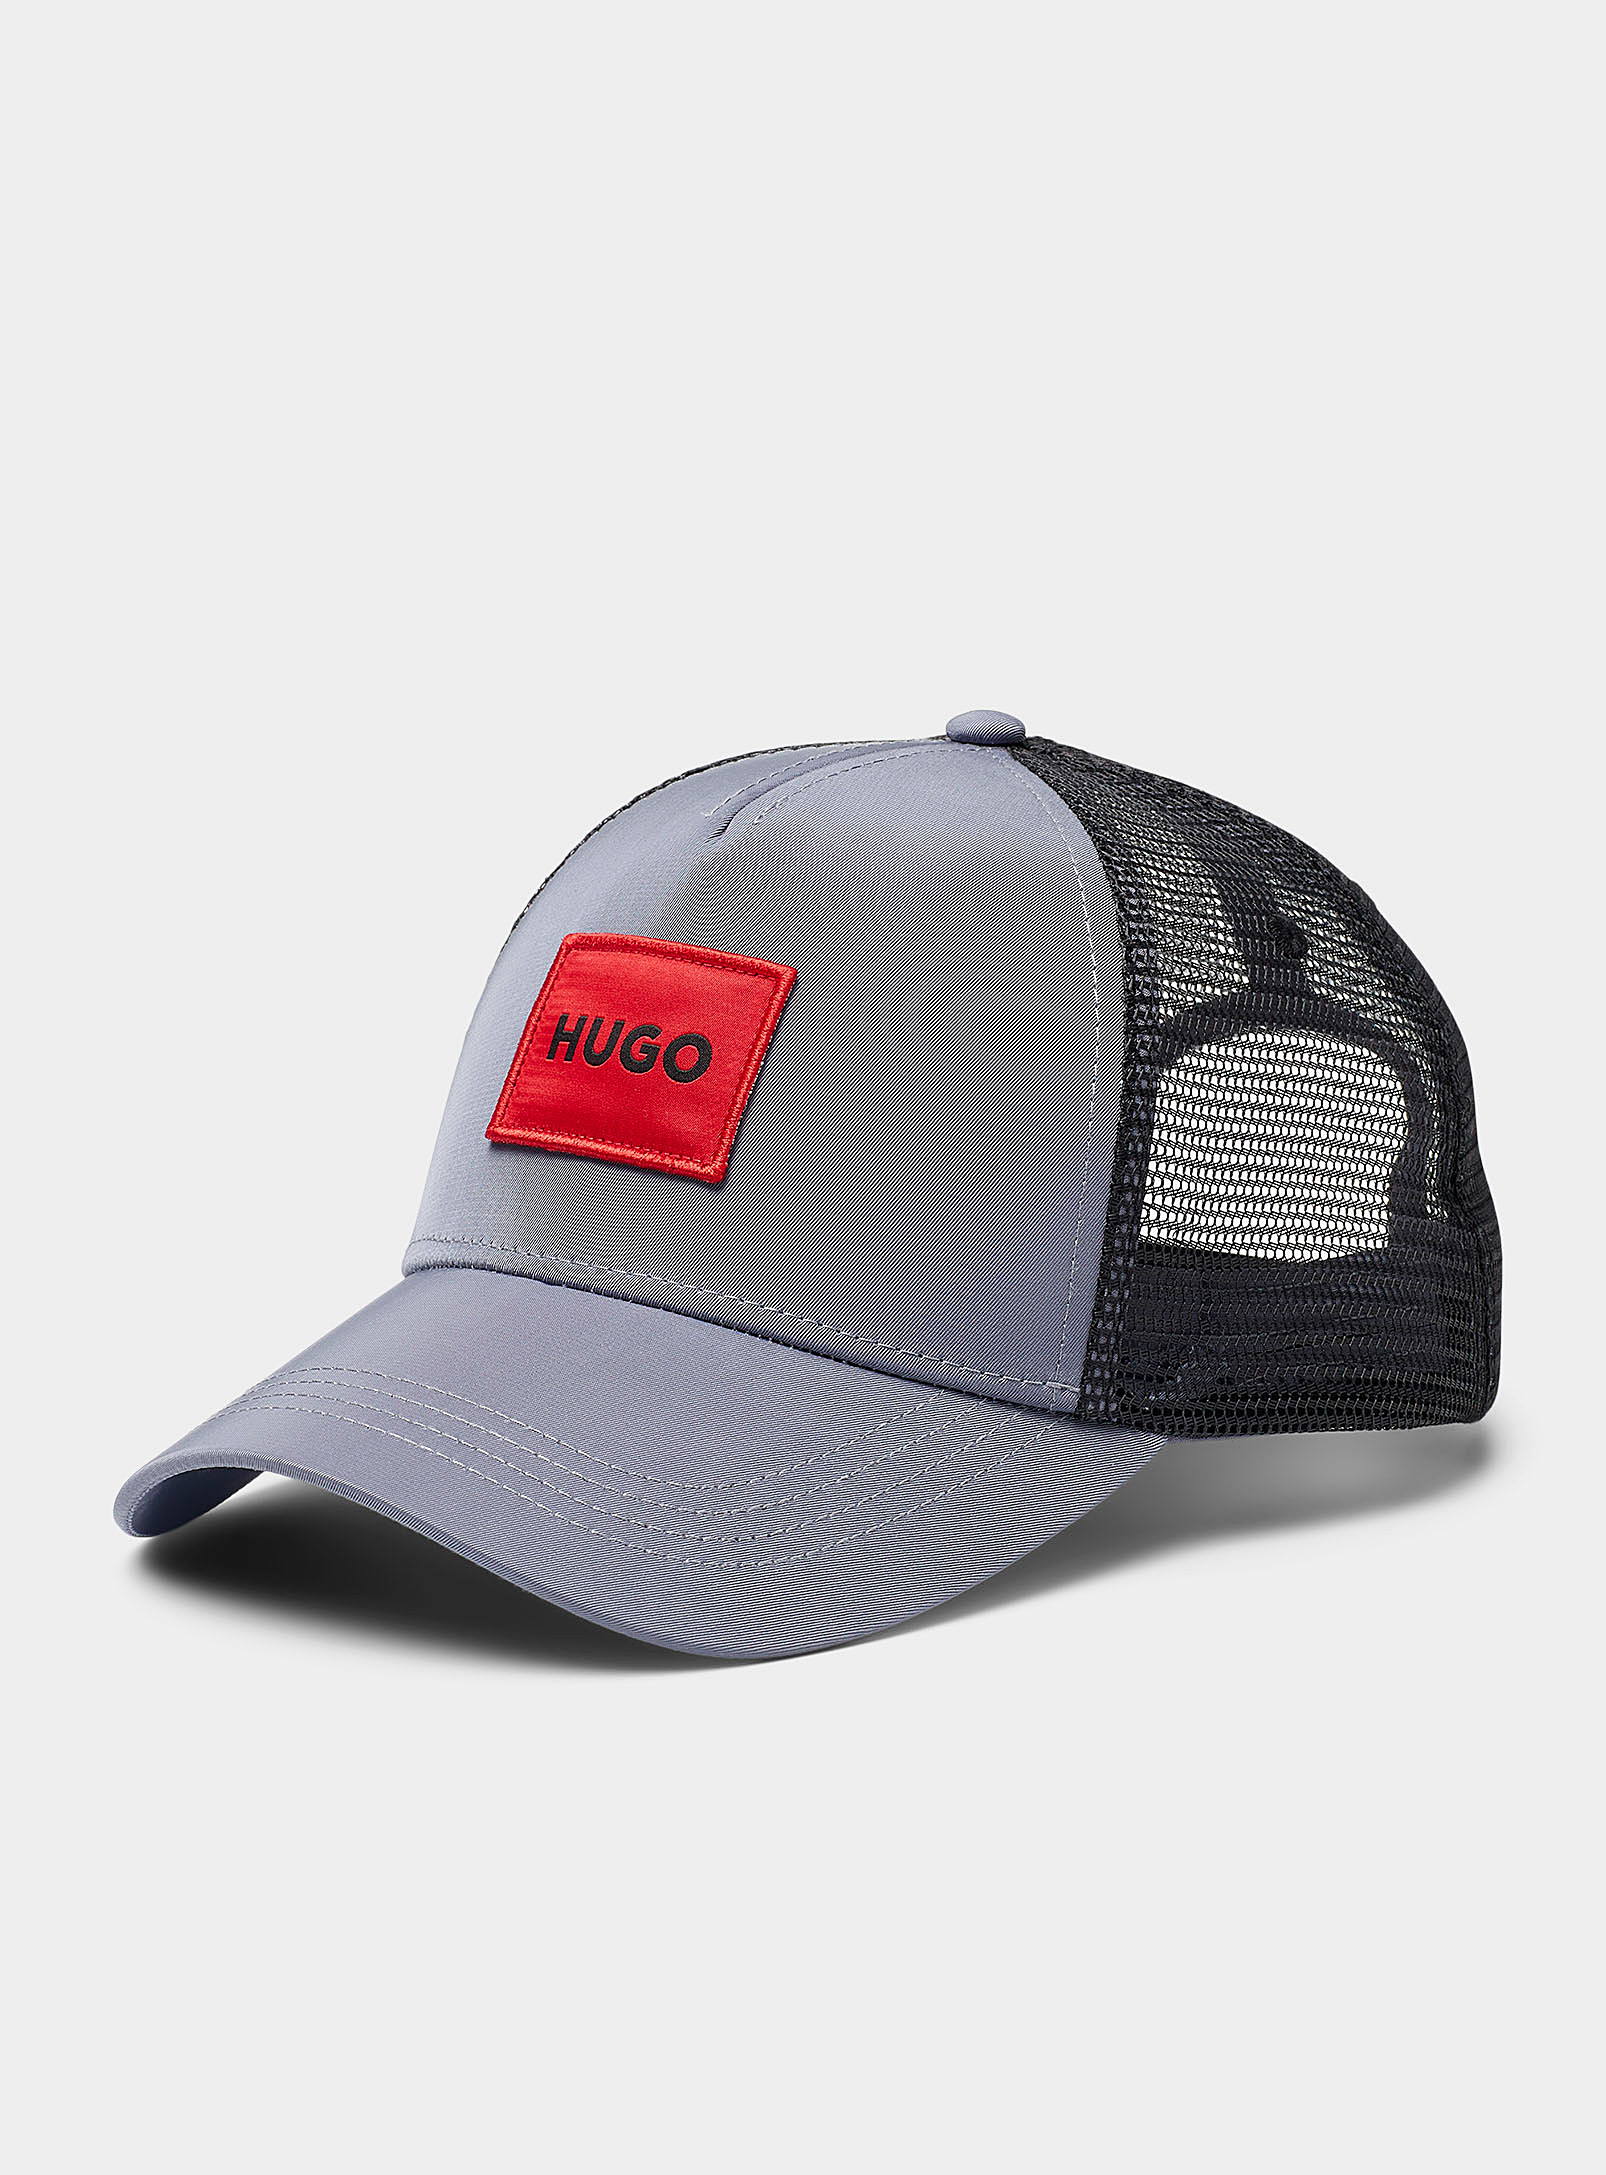 HUGO - Men's Red square logo trucker cap